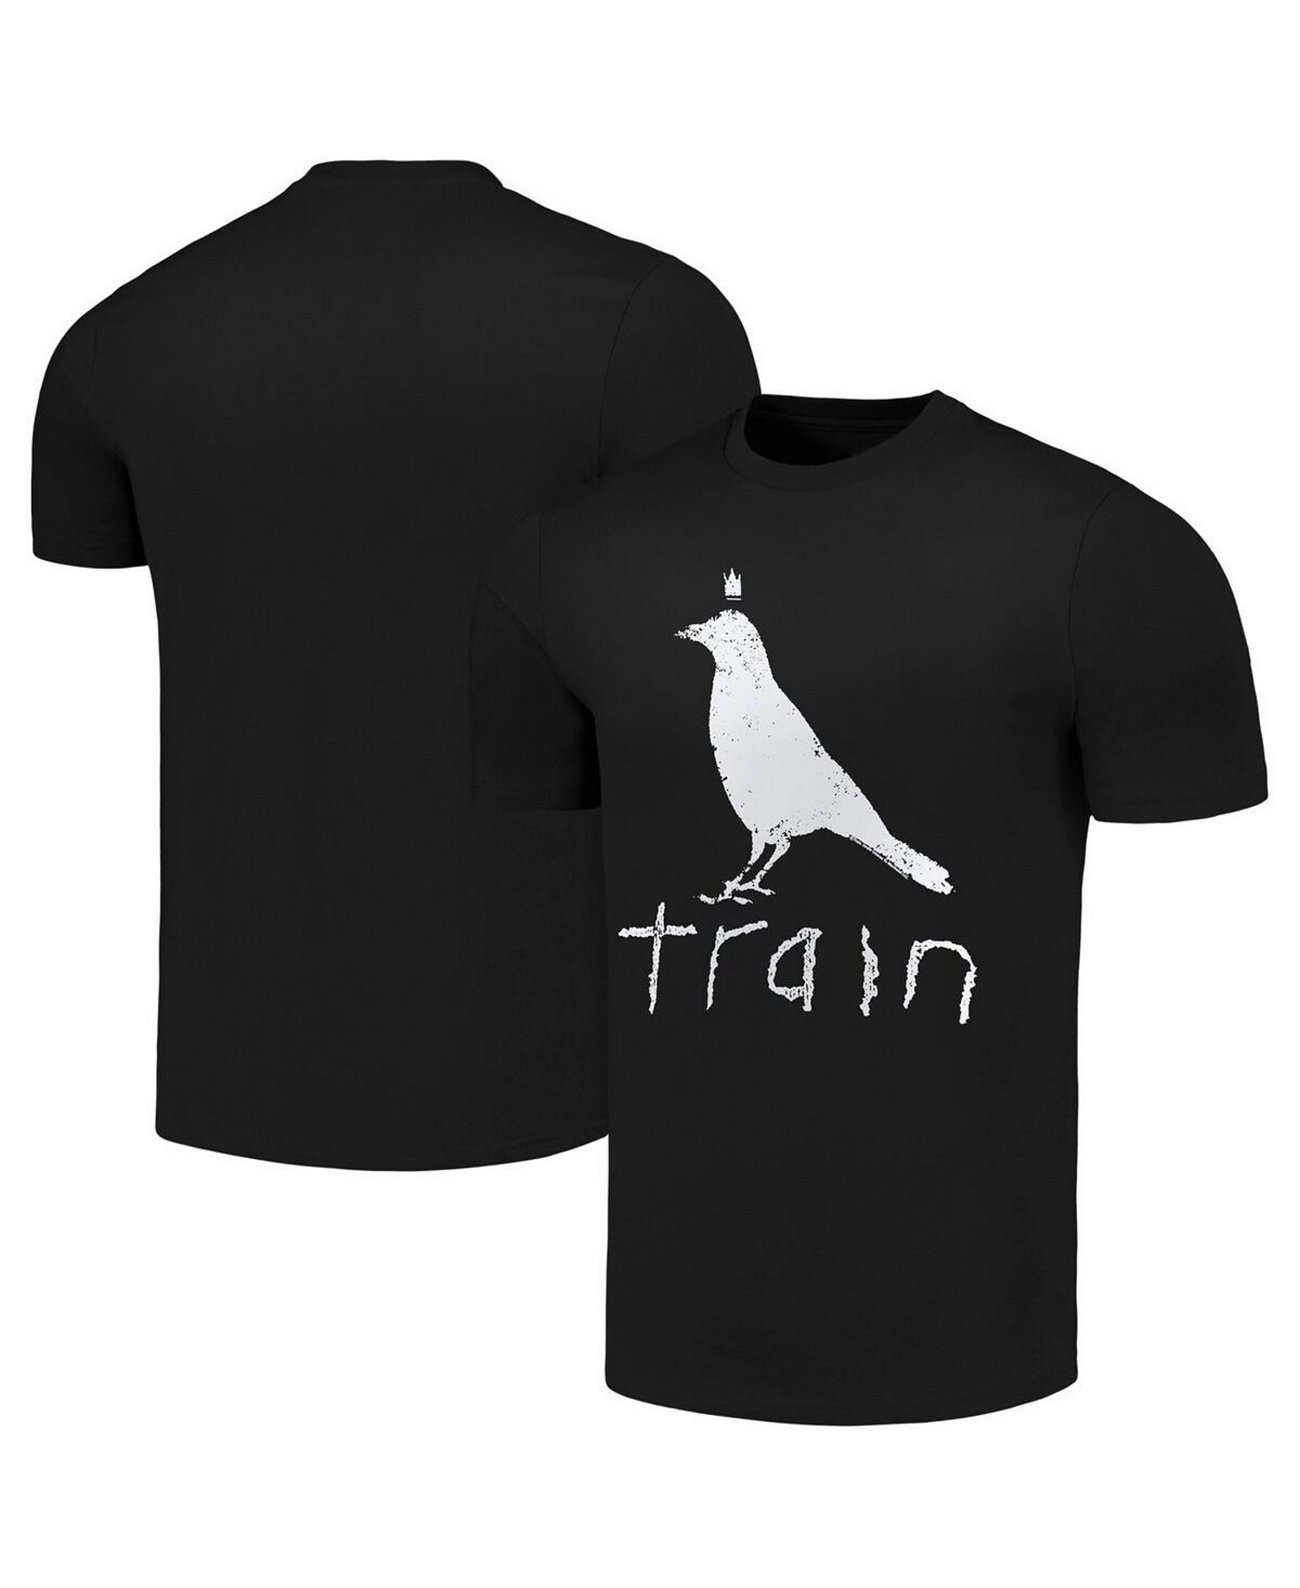 Мужская футболка Train White Crow от American Classics American Classics